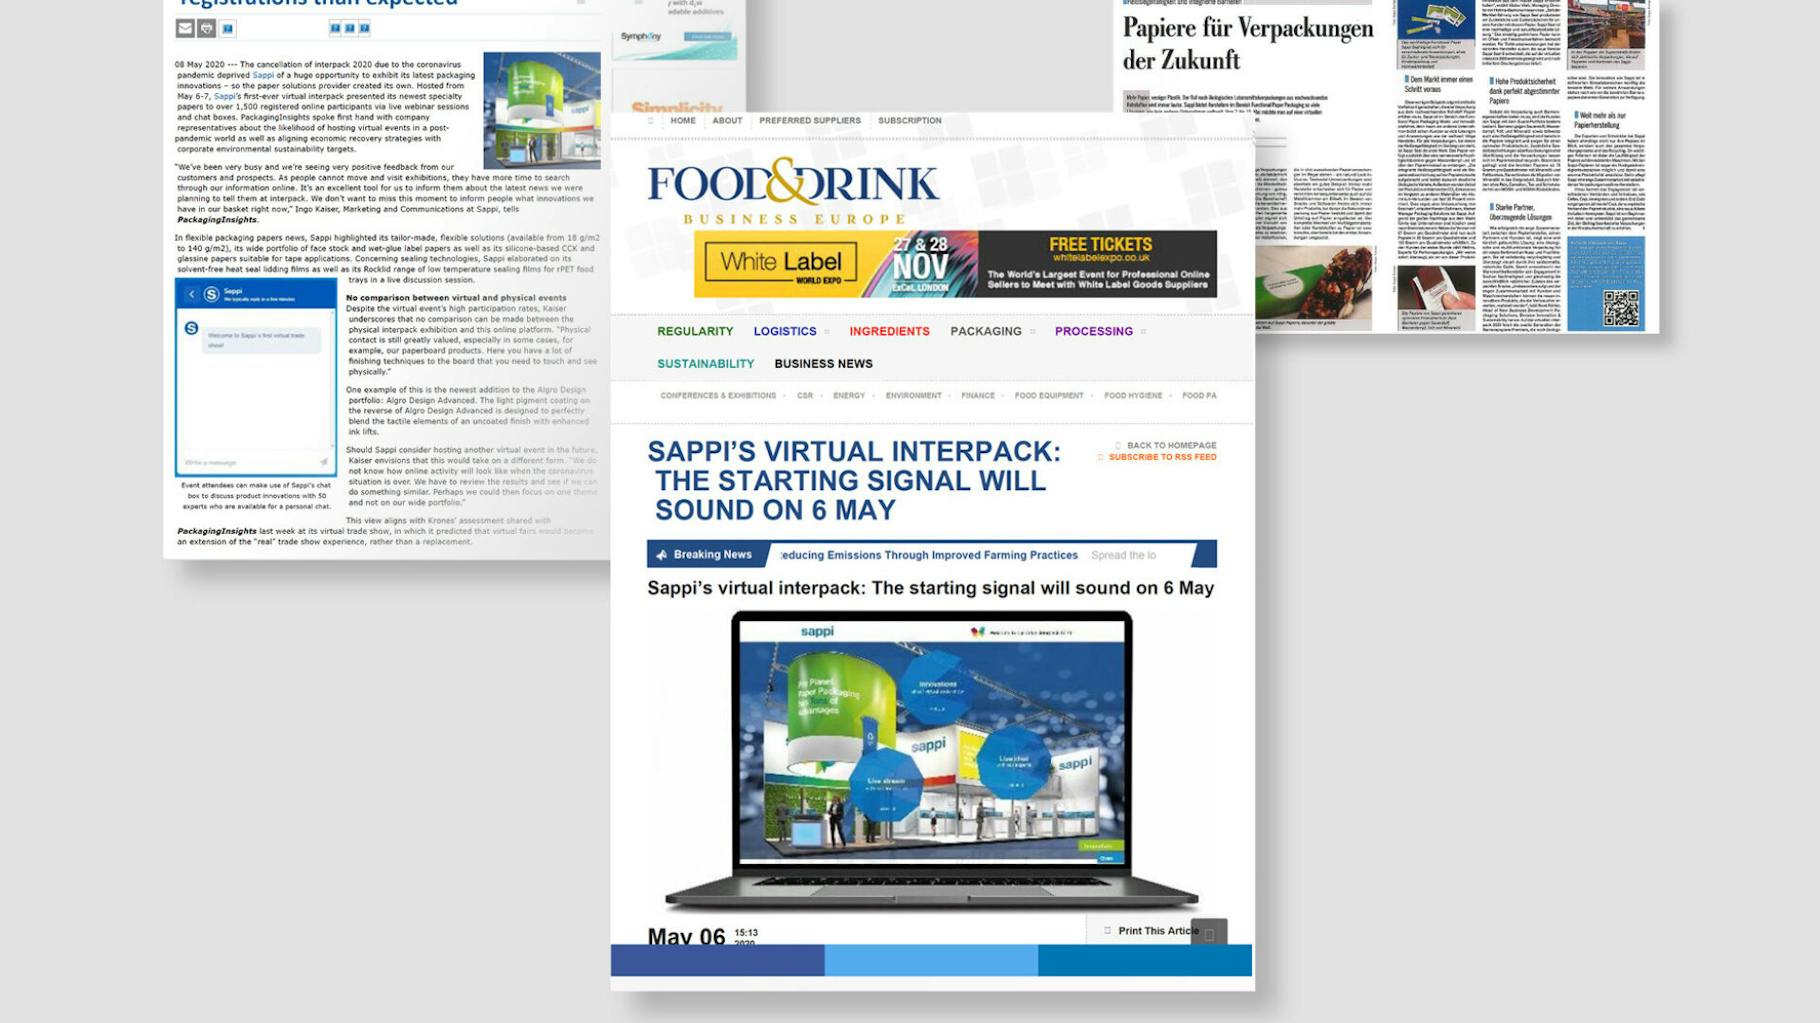 Zwei Screenshots einer Website und ein Scan einer Zeitschrift zum Thema virtuelle Messe sind abgebildet.